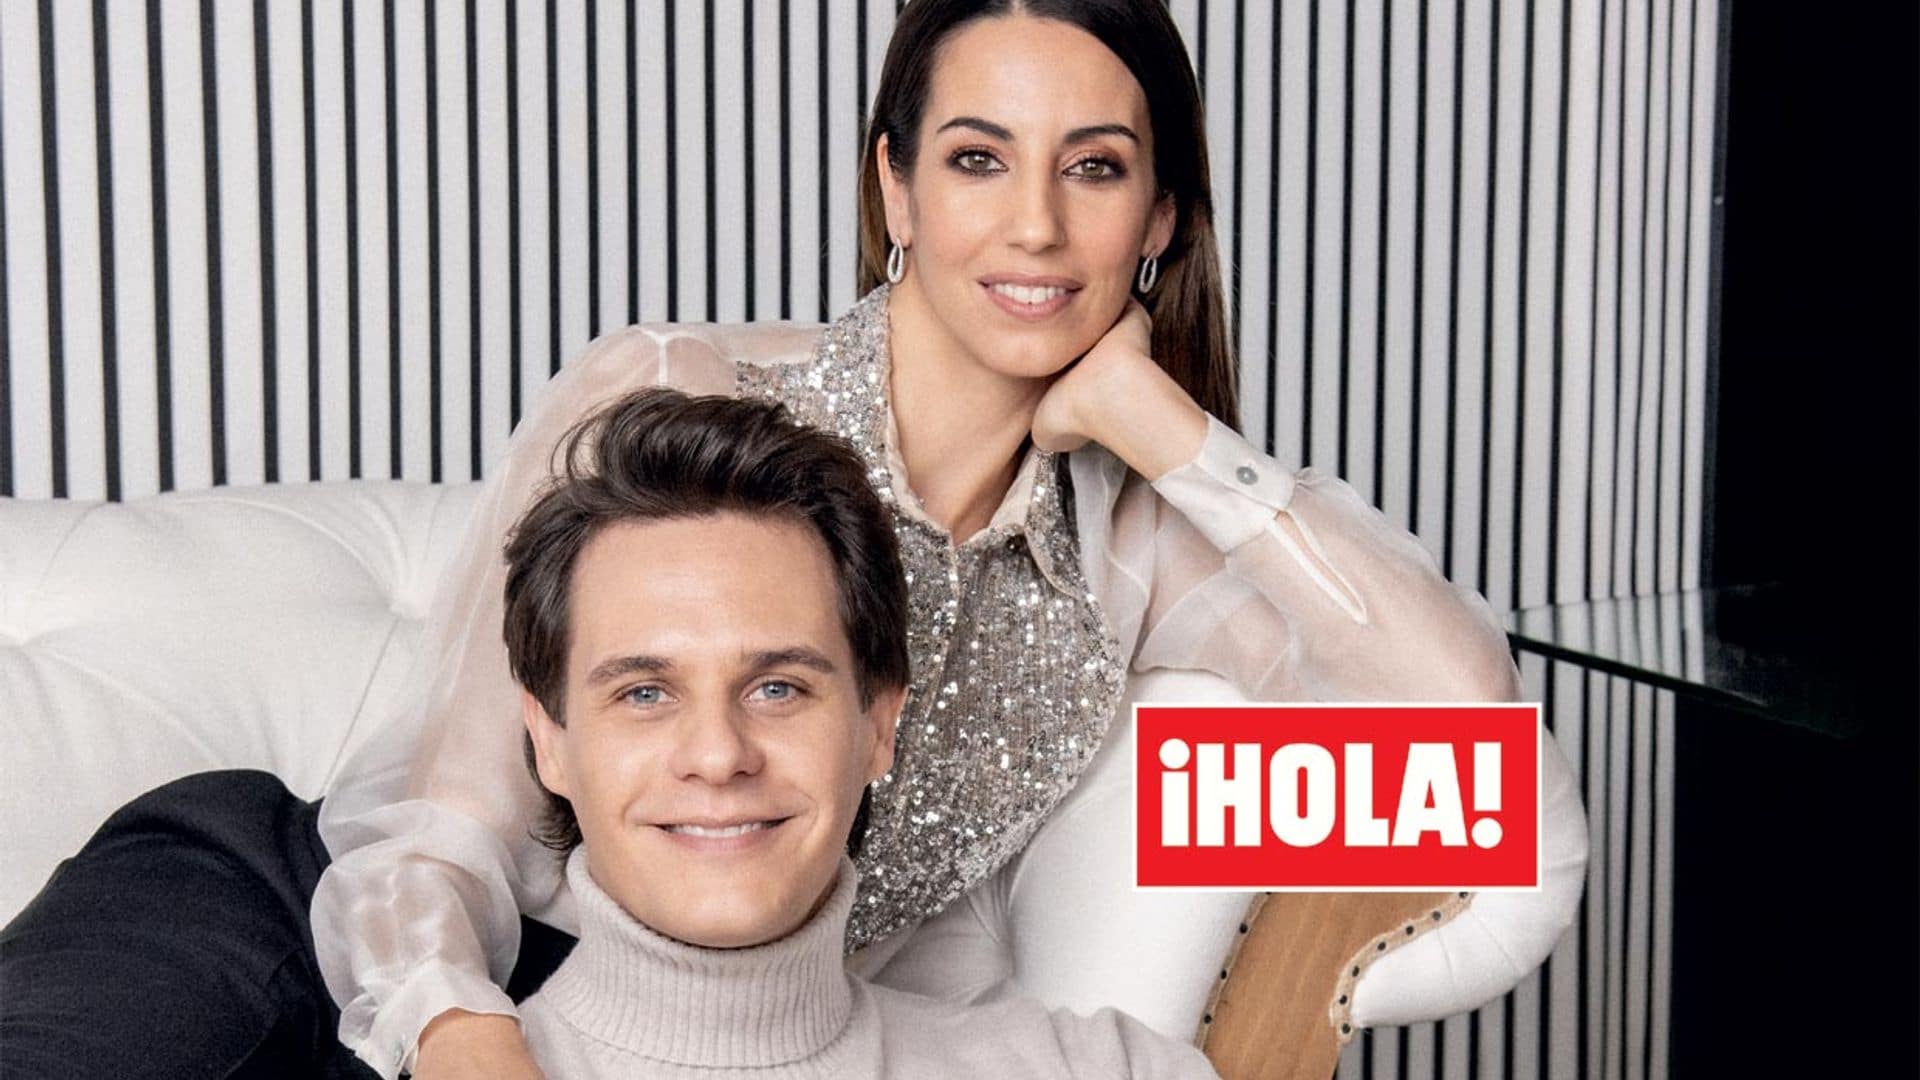 En ¡HOLA!: Christian Gálvez y Almudena Cid, confesiones al despedir el año